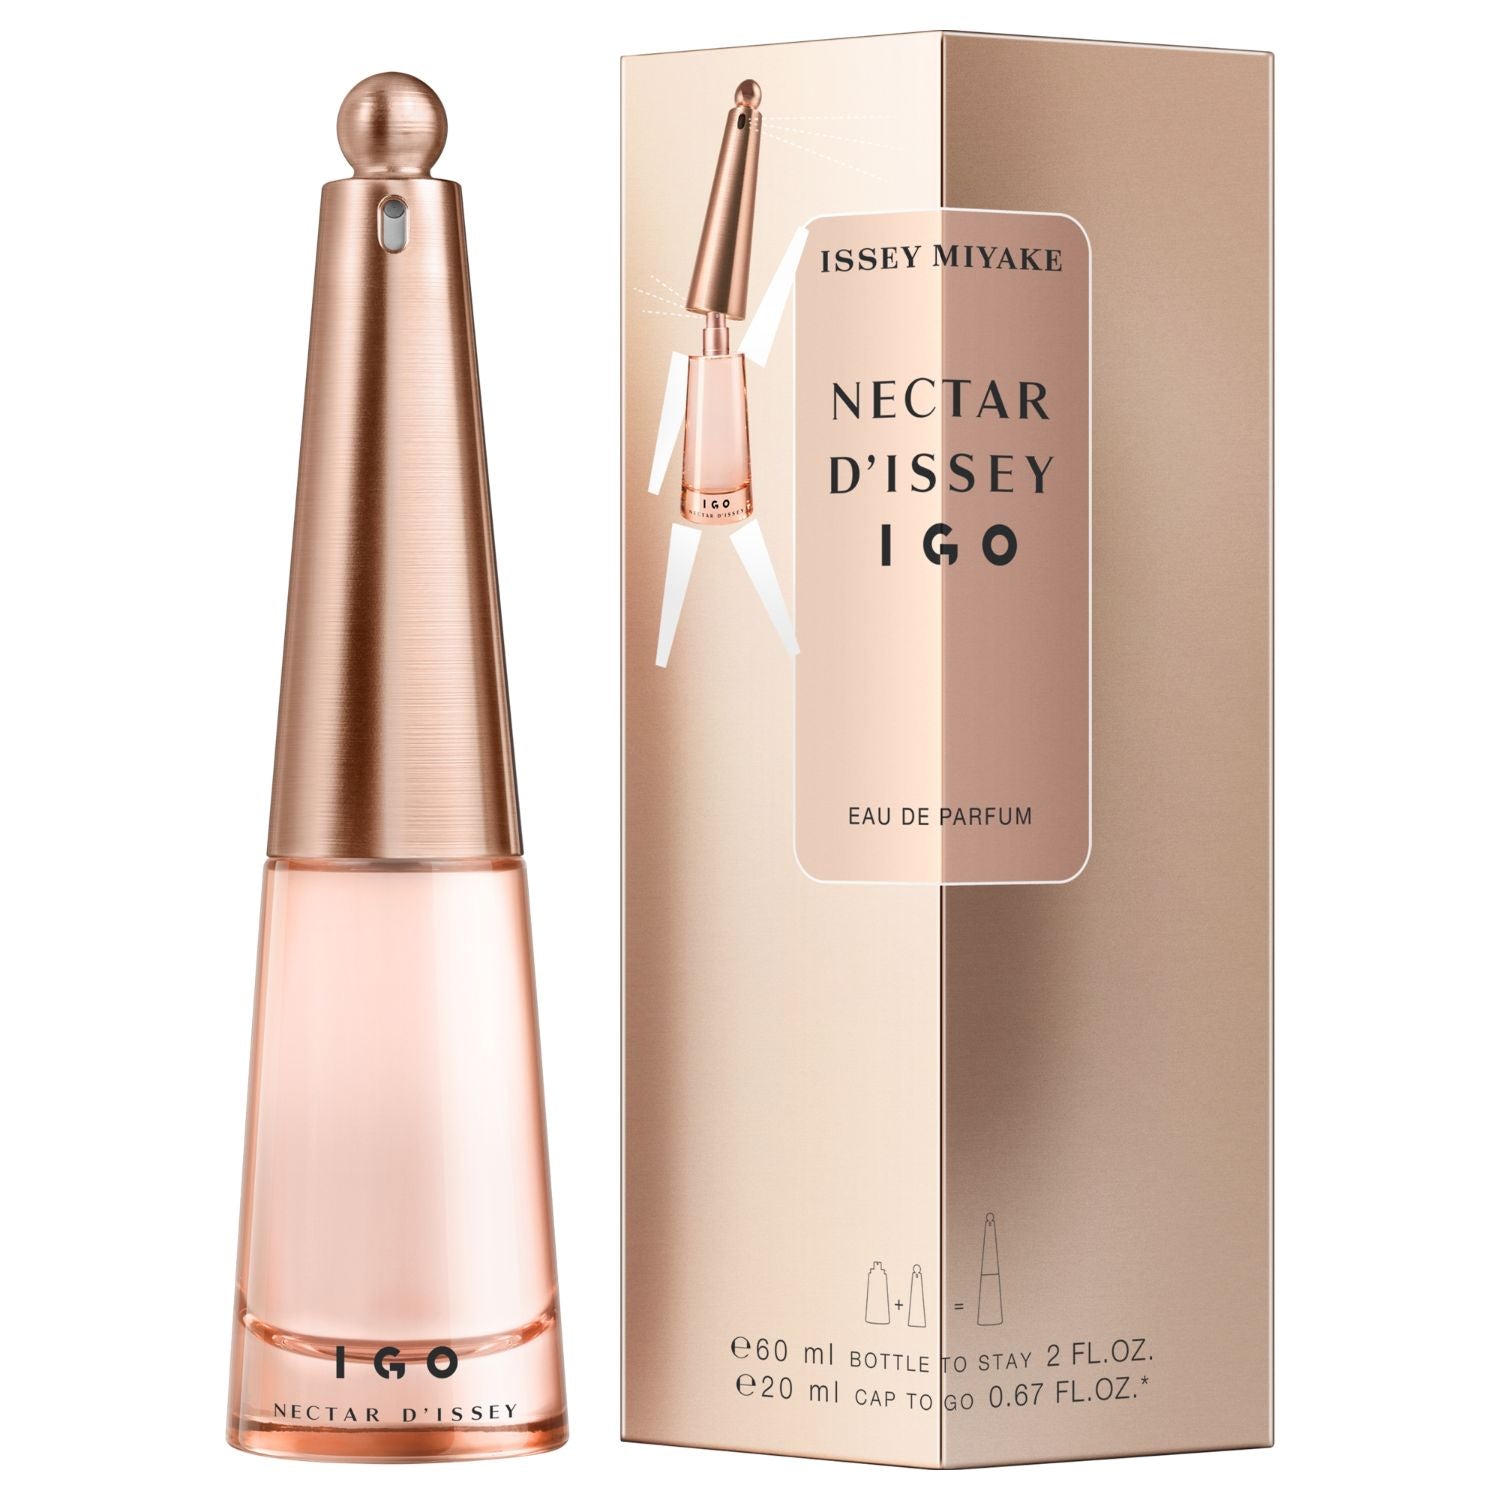 Nectar D´issey Igo Eau de Parfum (60 + 20ML)